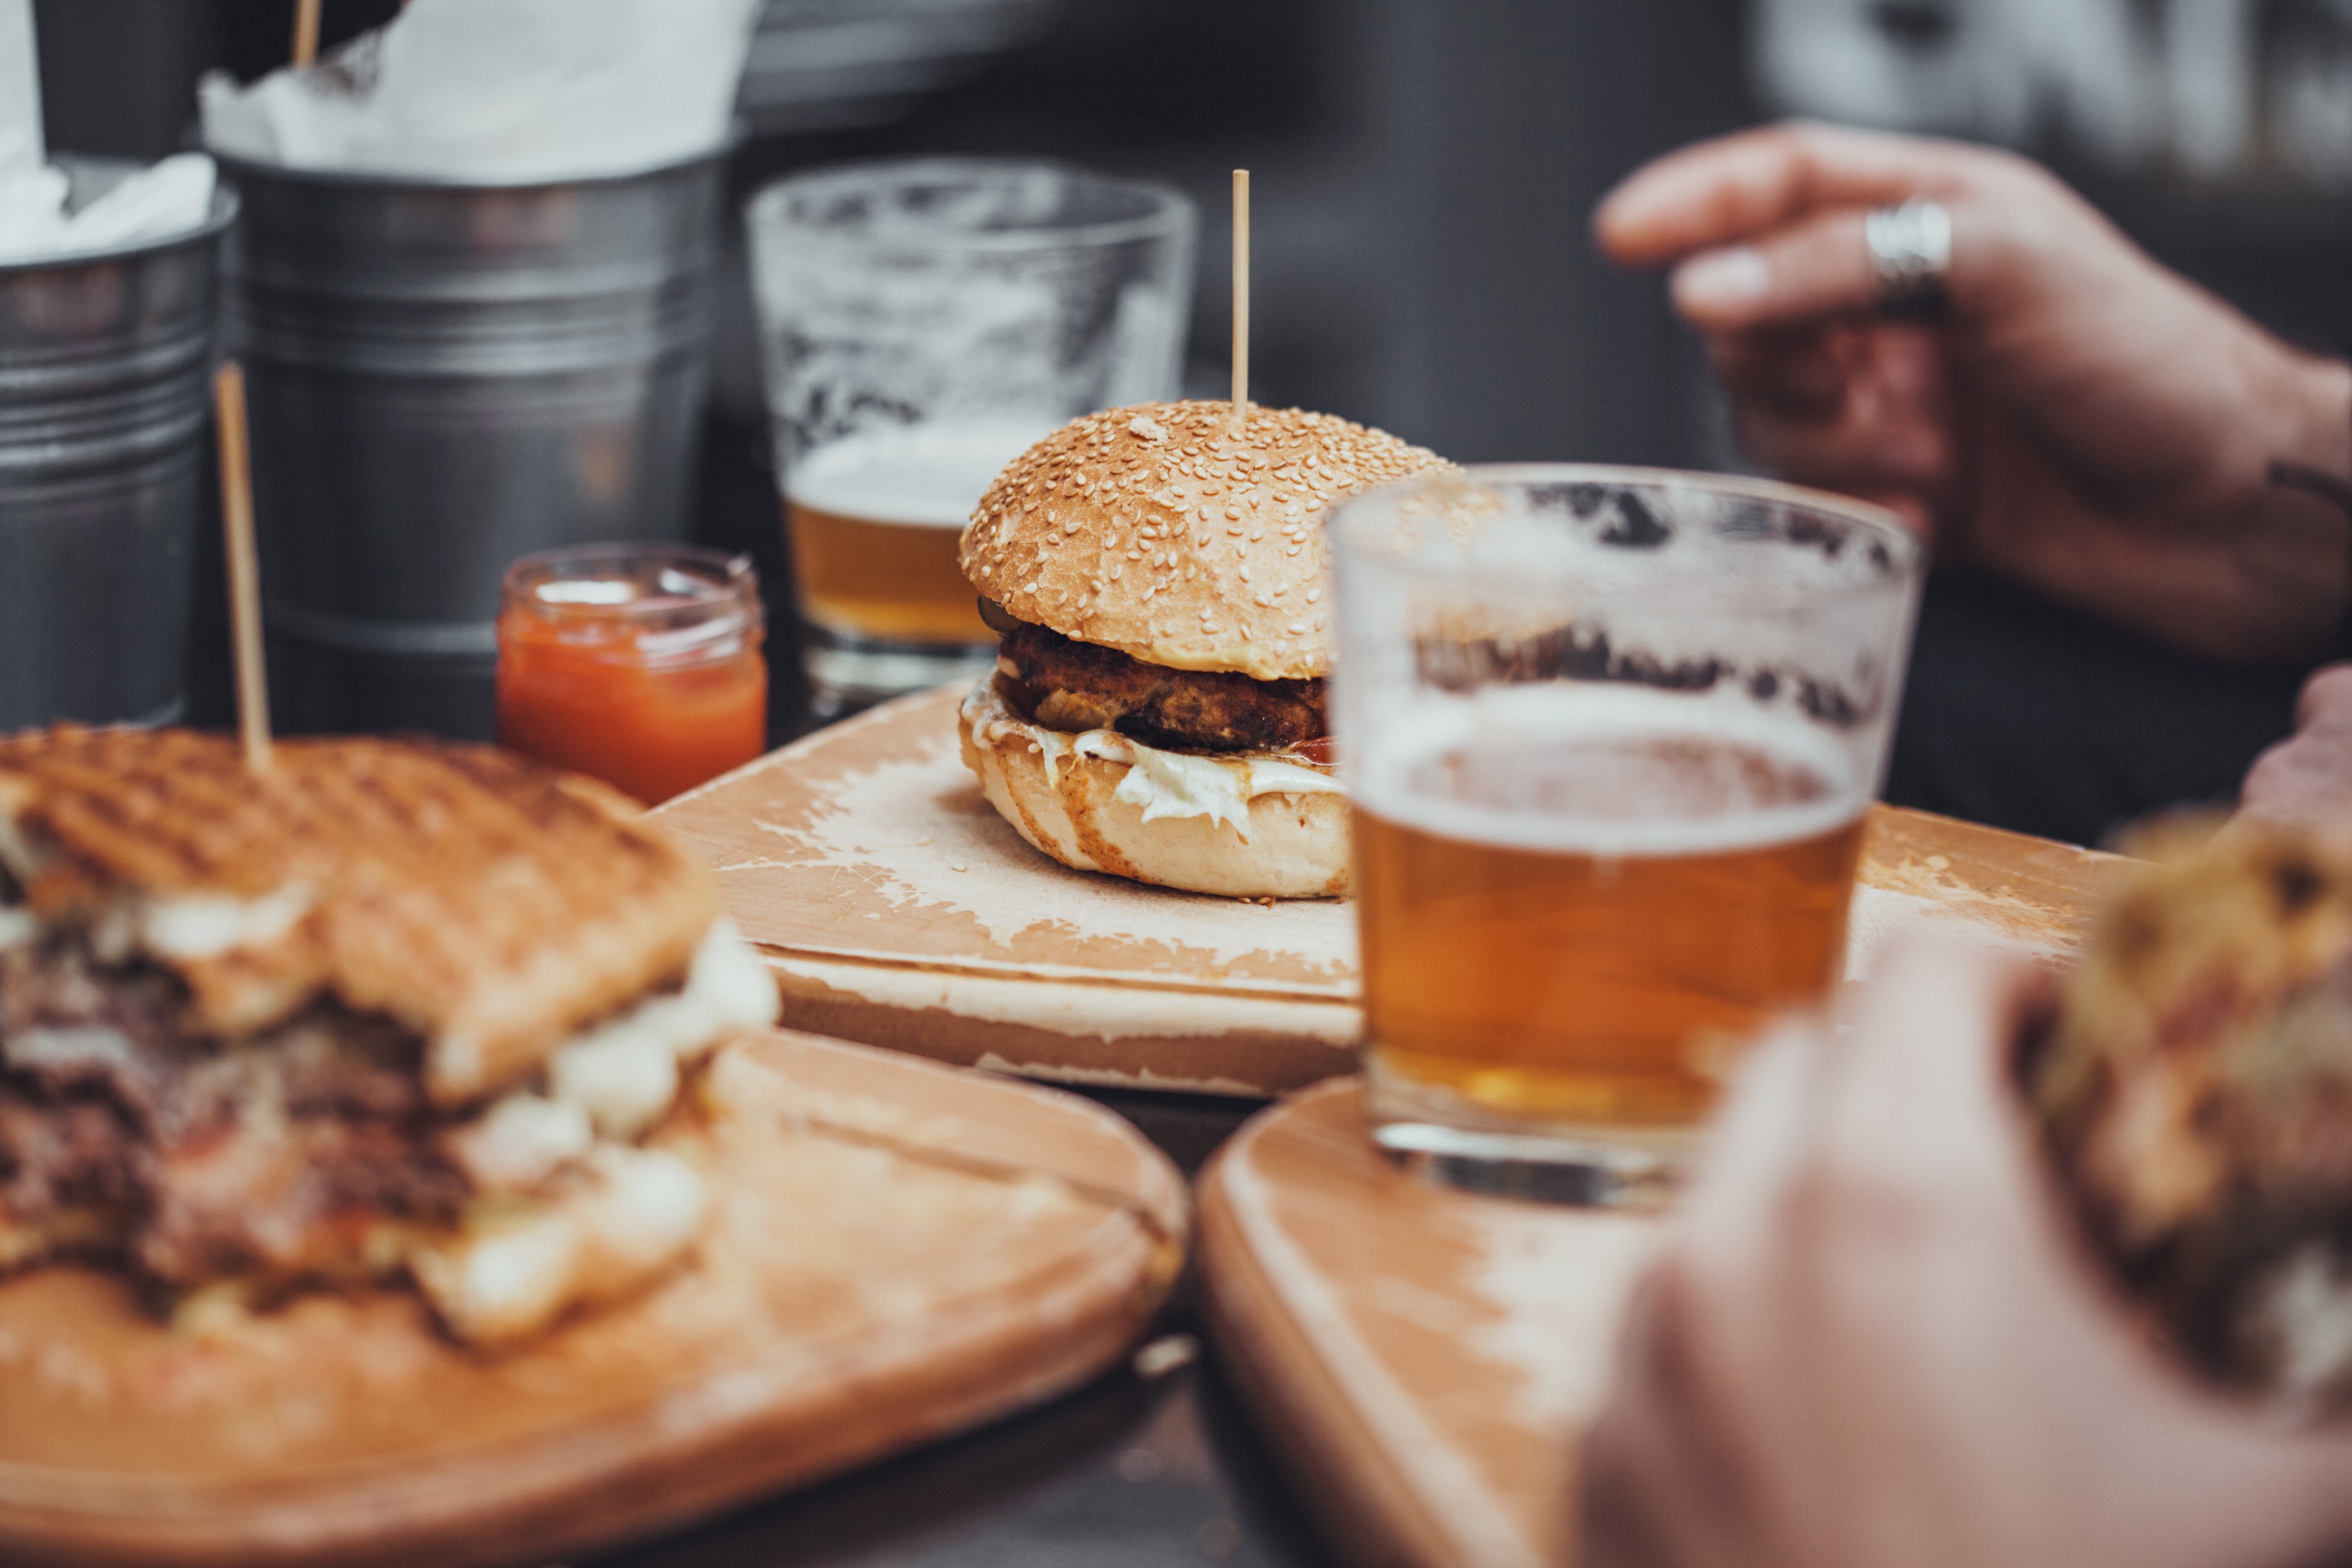 De Ziua Internațională a Berii, foodpanda îți recomandă top preparate culinare care se potrivesc perfect alături de bere